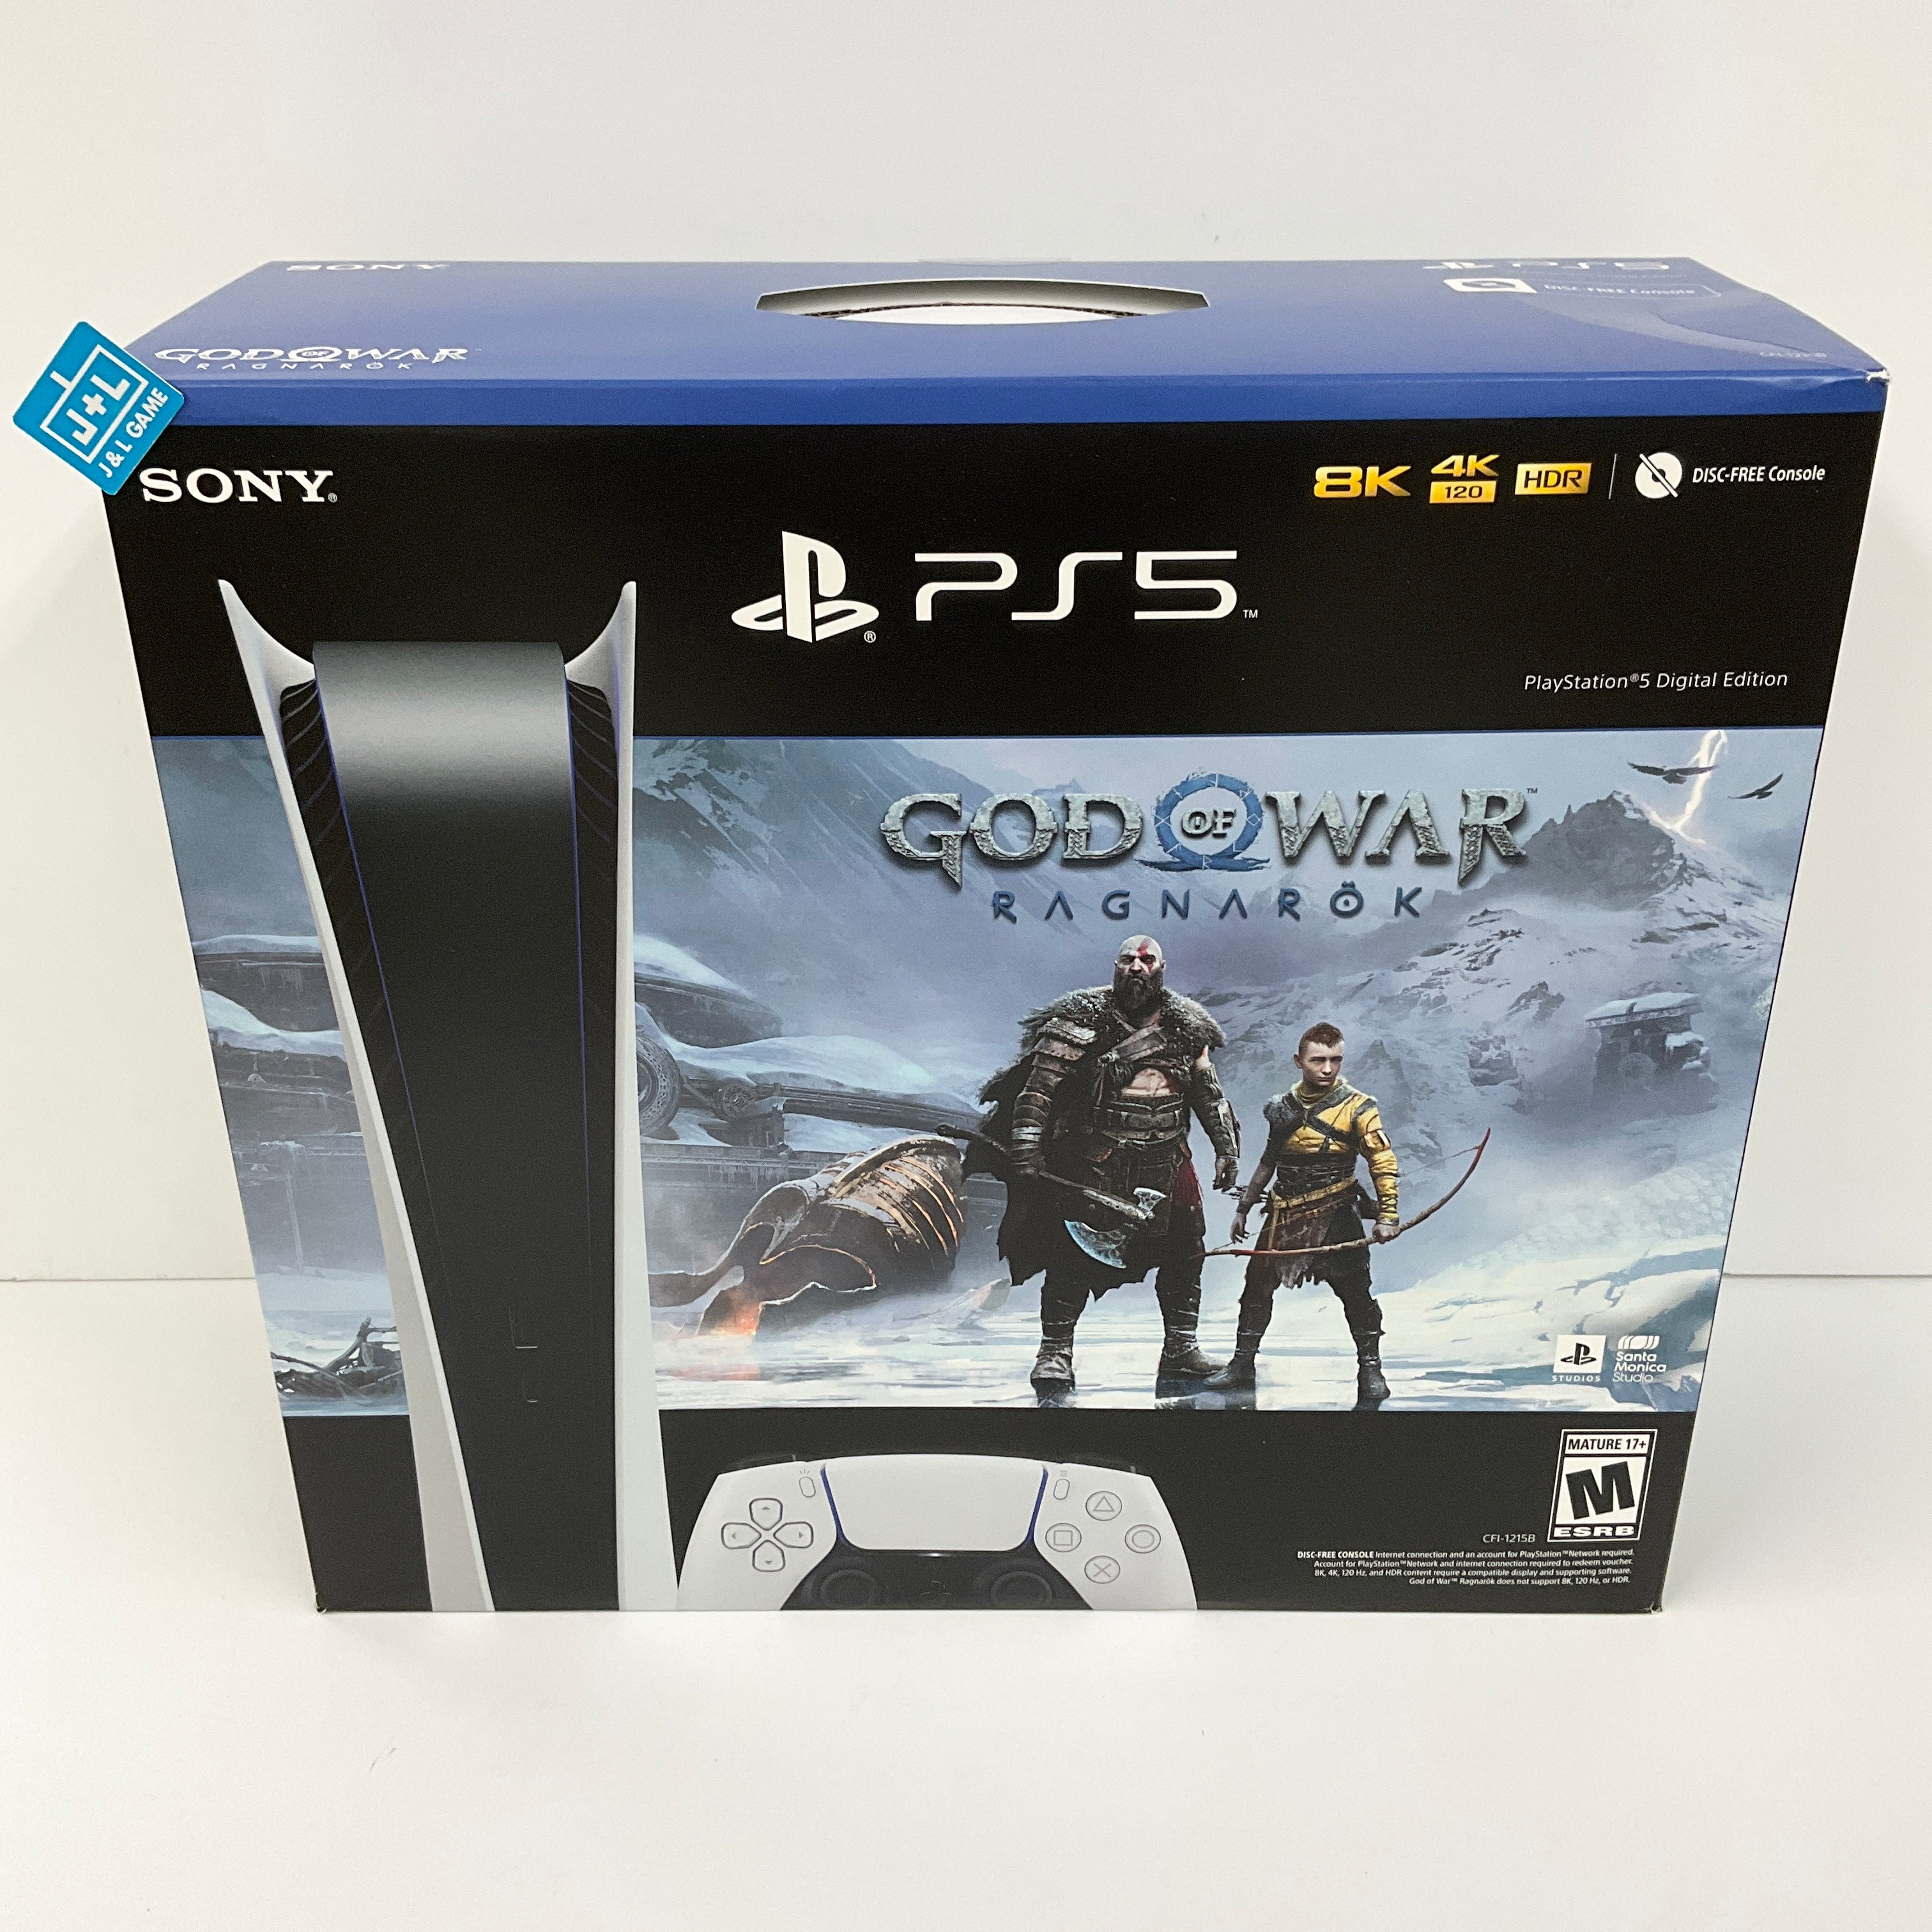 God of War: Ragnarok - PlayStation 4 